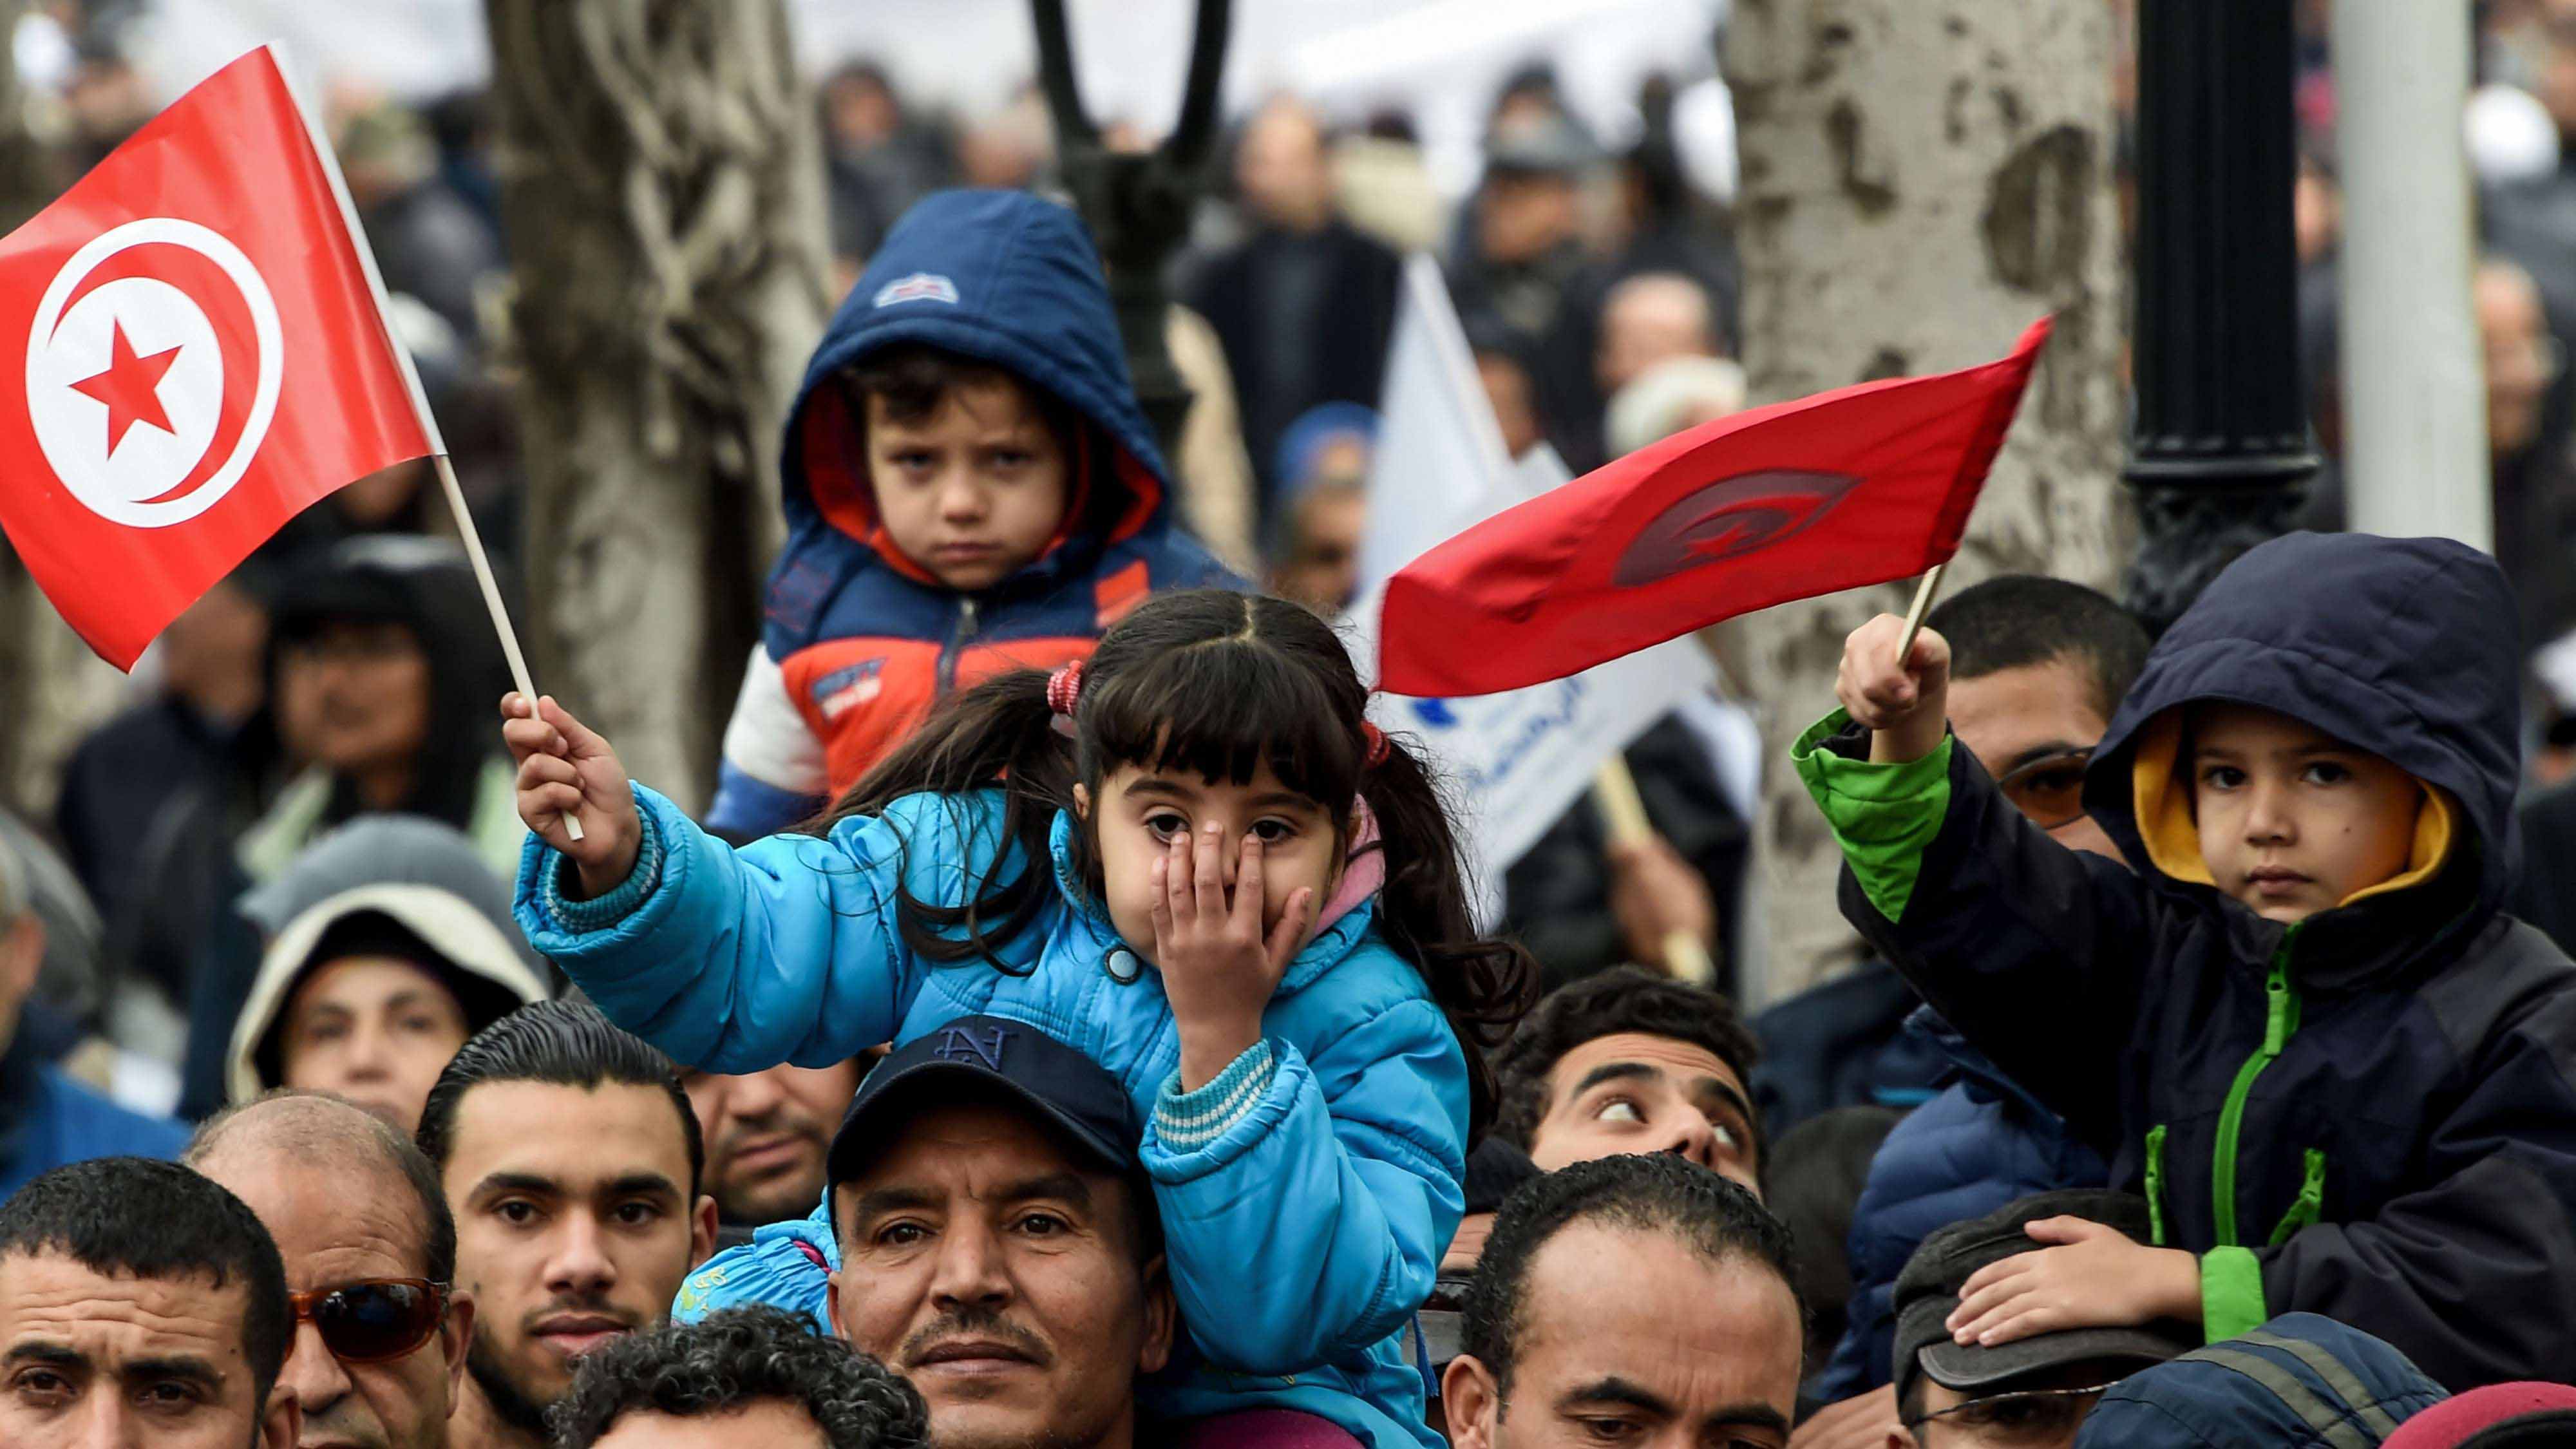 غضب الشارع في تونس يهدد المسؤولين في الحكومة